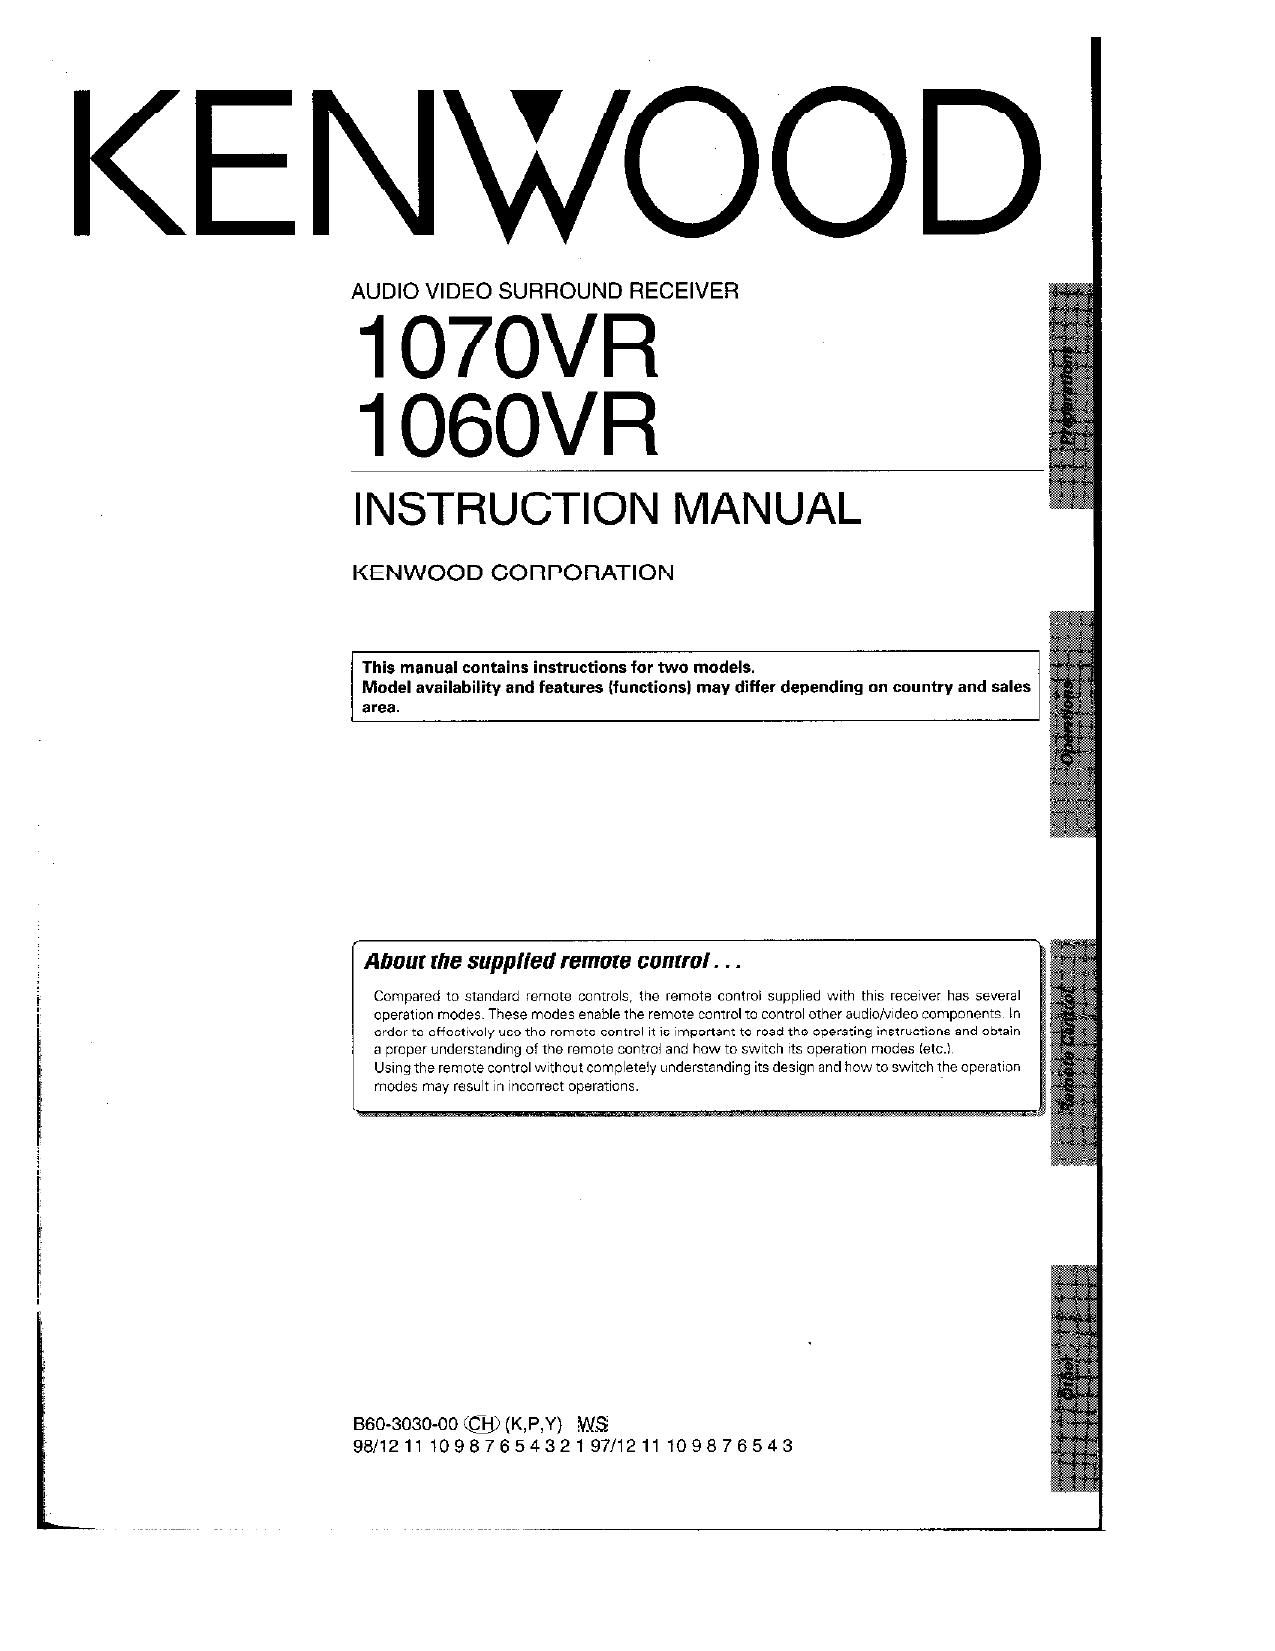 Kenwood 1070 VR Owners Manual